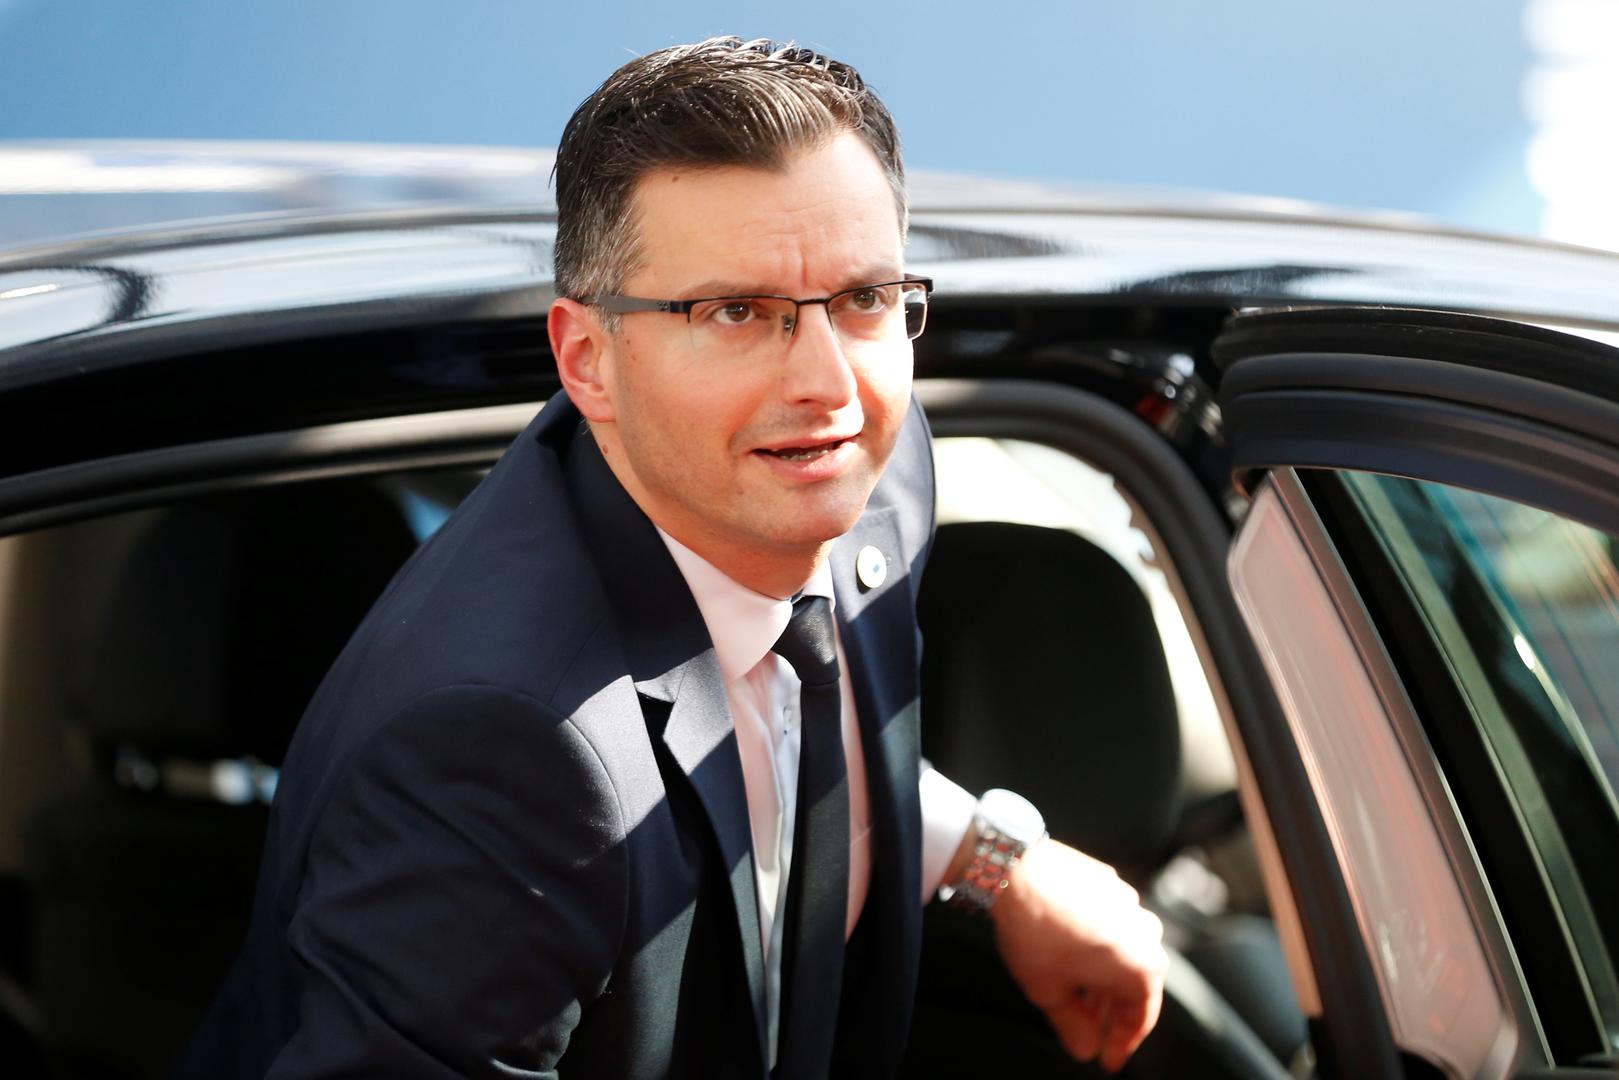 Slovenski premijer Marjan Šarec sazvao je hitnu sjednicu slovenskog Vijeća za nacionalnu sigurnost